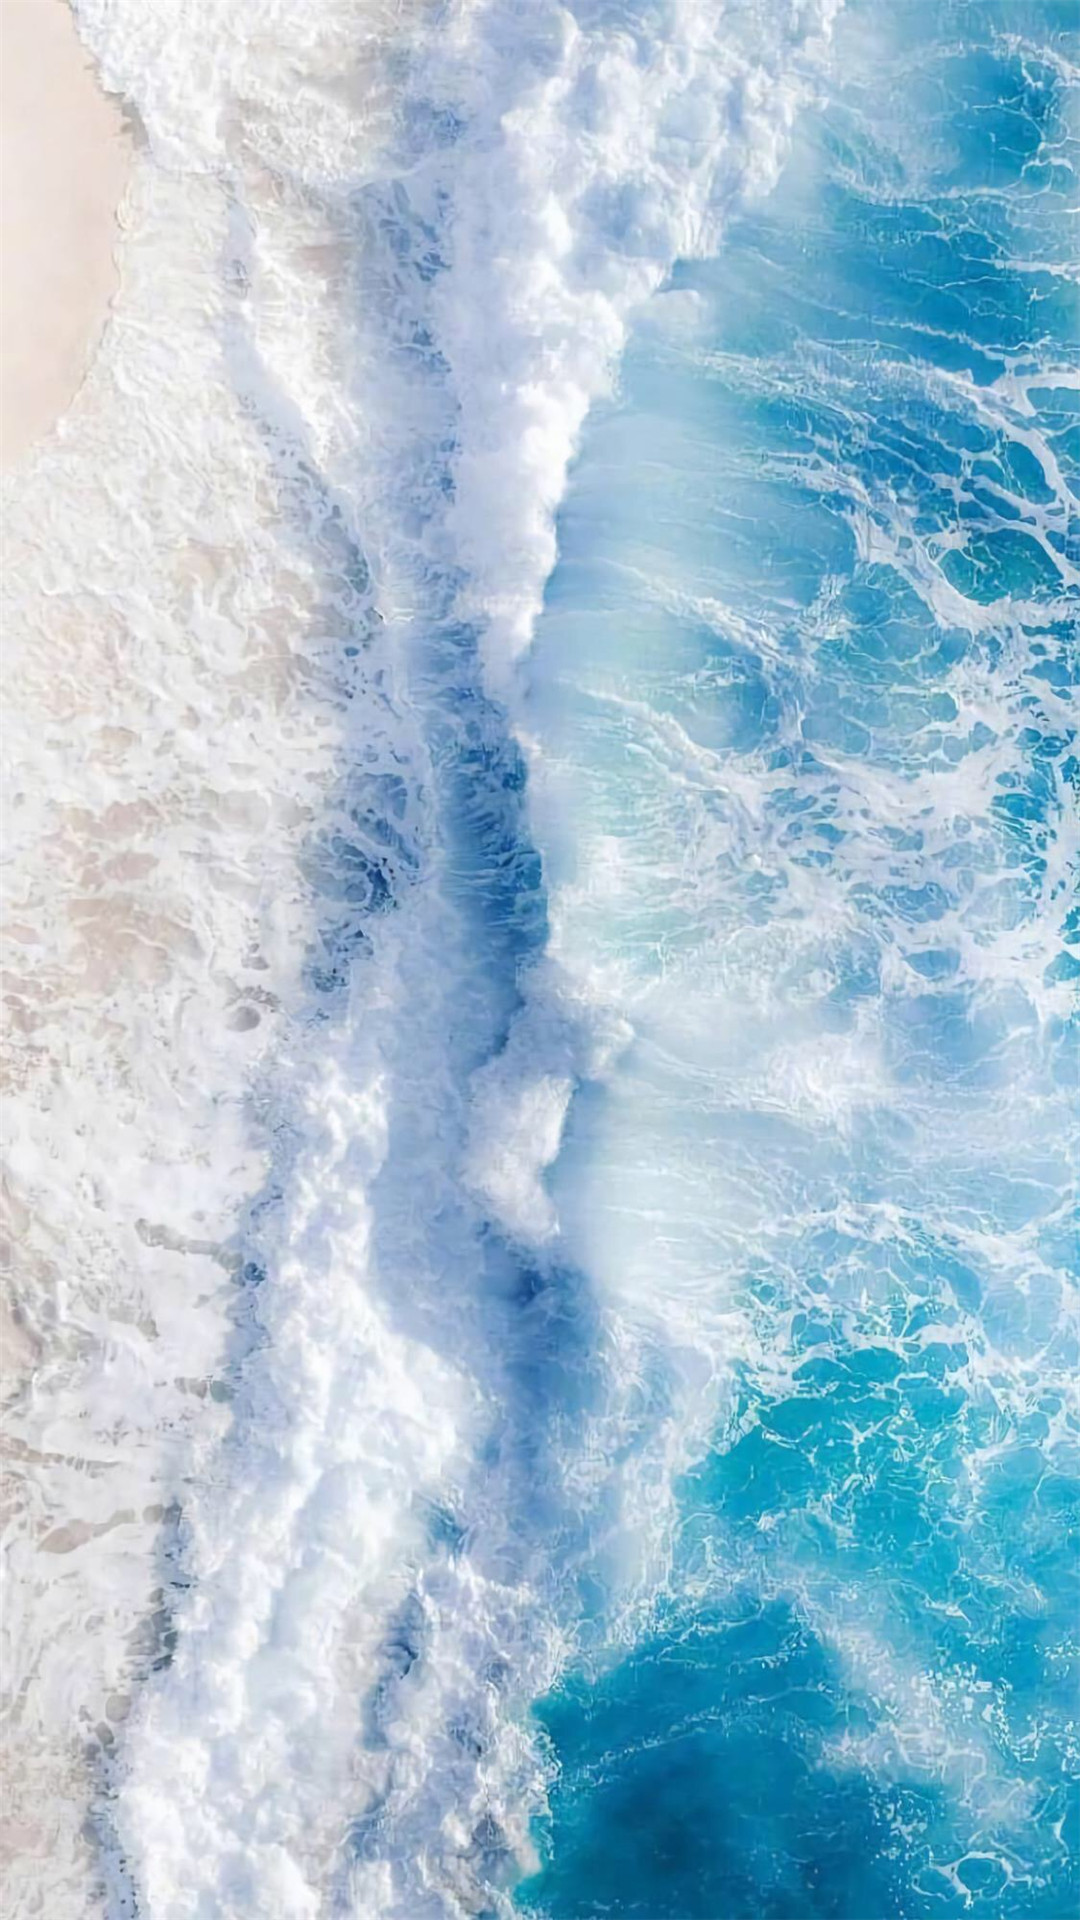 apk小游戏蓝色系海洋风景唯美高清手机壁纸安卓手机壁纸高清截图6